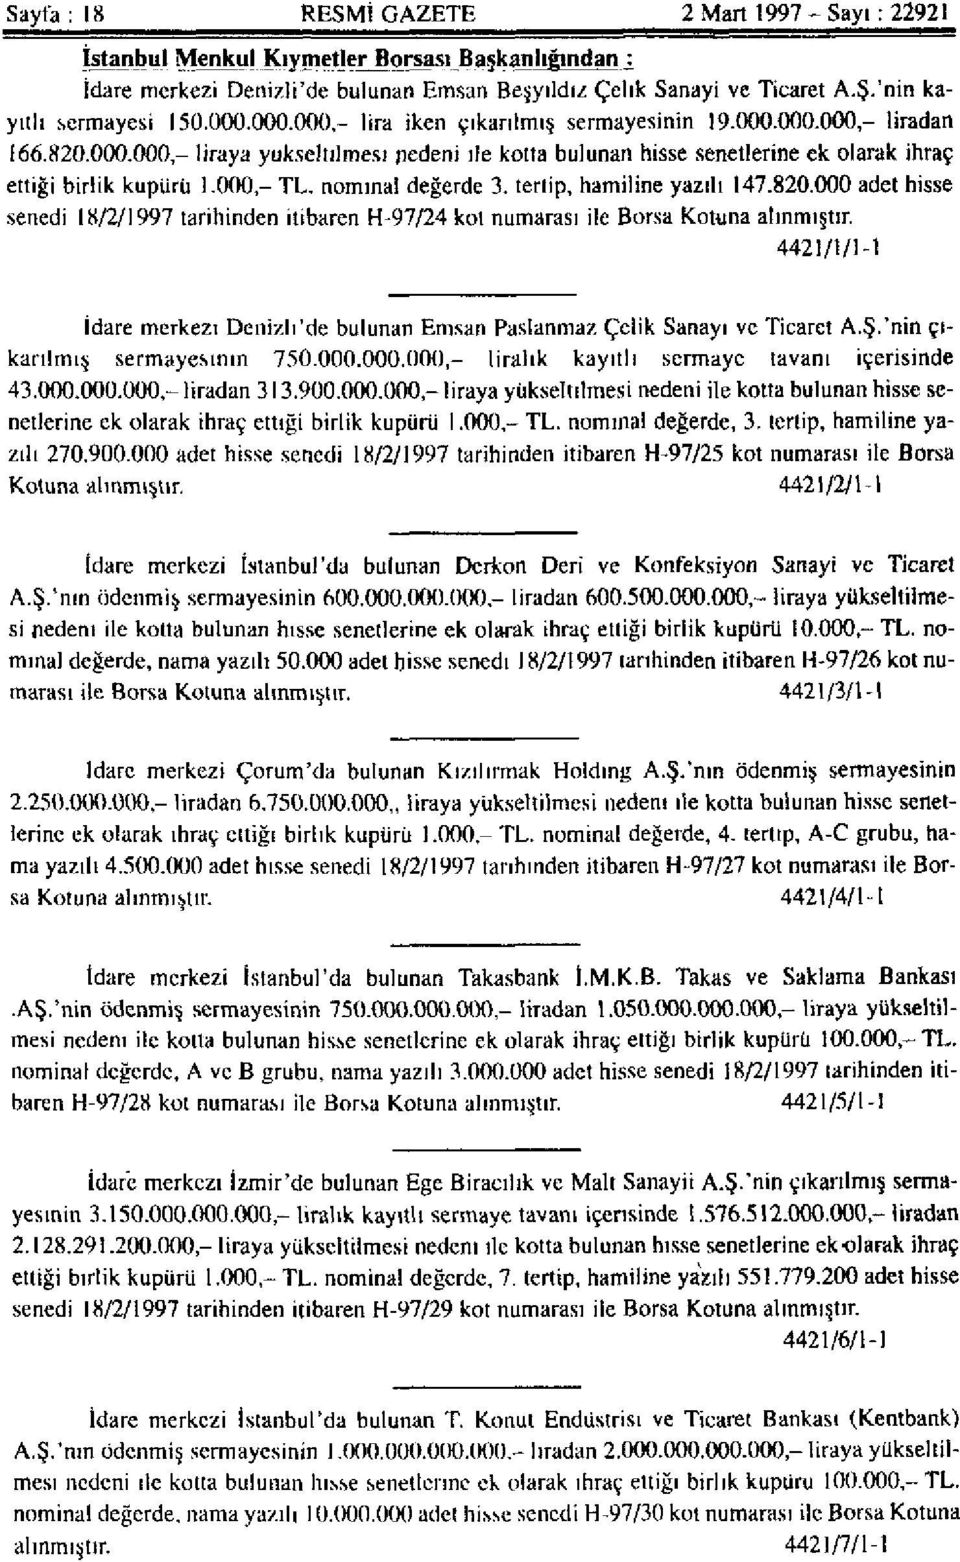 000 - TL. nominal değerde 3. tertip, hamiline yazılı 147.820.000 adet hisse senedi 18/2/1997 tarihinden itibaren H-97/24 kot numarası ile Borsa Kotuna alınmıştır.